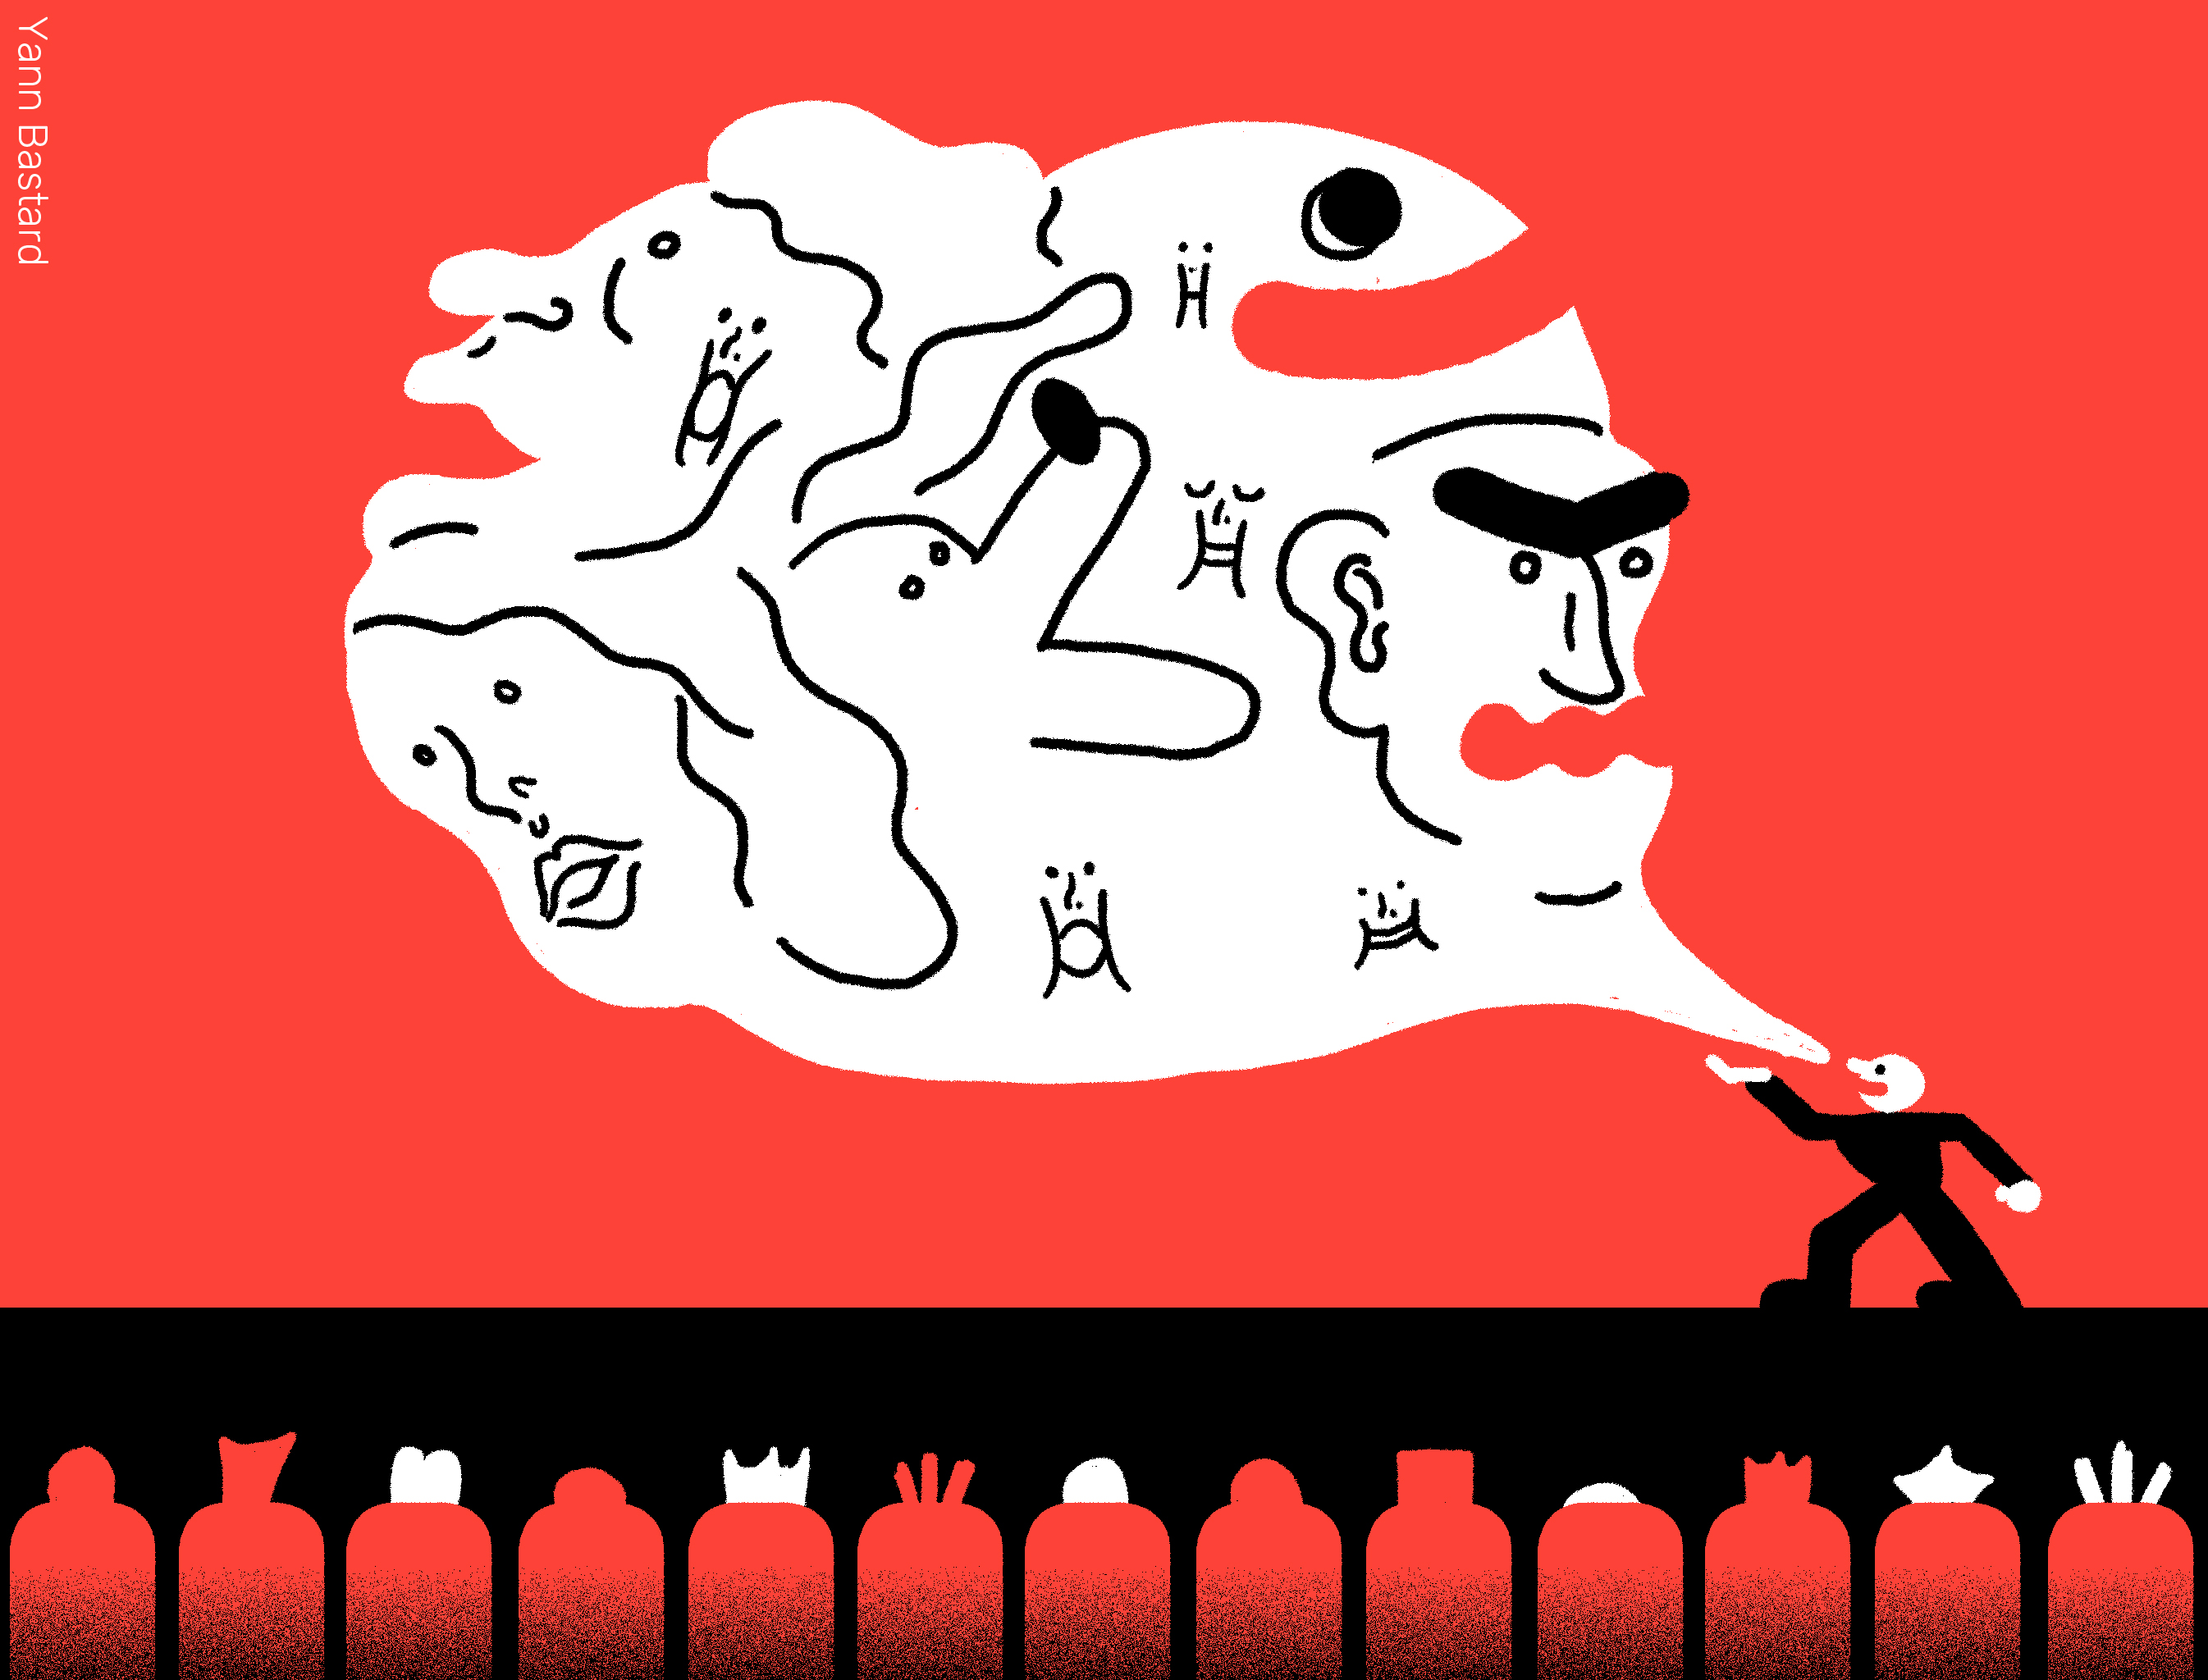 Illustration représentant une personne qui parle devant d'autres. De sa bouche sort une bulle contenant des monstres de fictions, représentant les voix possibles du comédien.